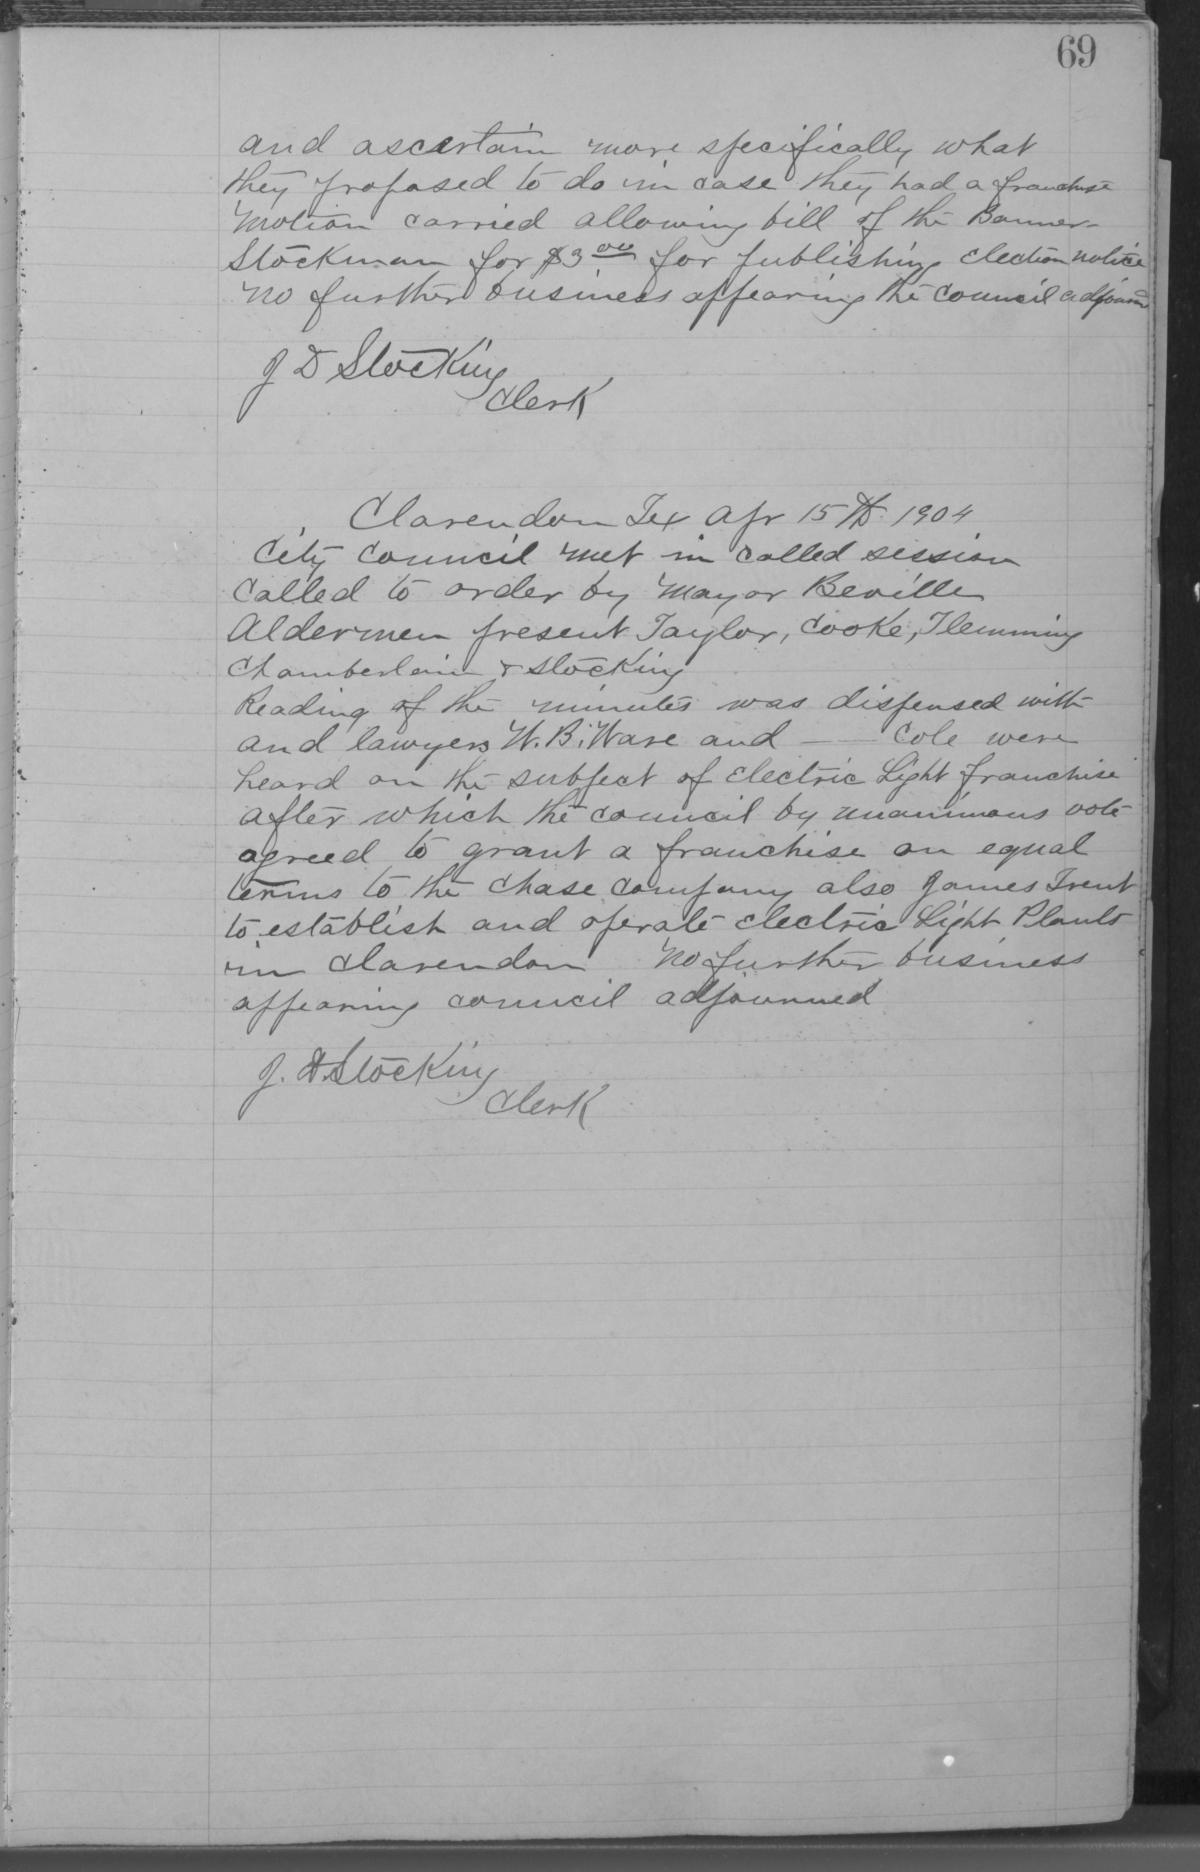 [City of Clarendon Ledger: Minutes for September 10, 1901- April 19, 1917]
                                                
                                                    69
                                                